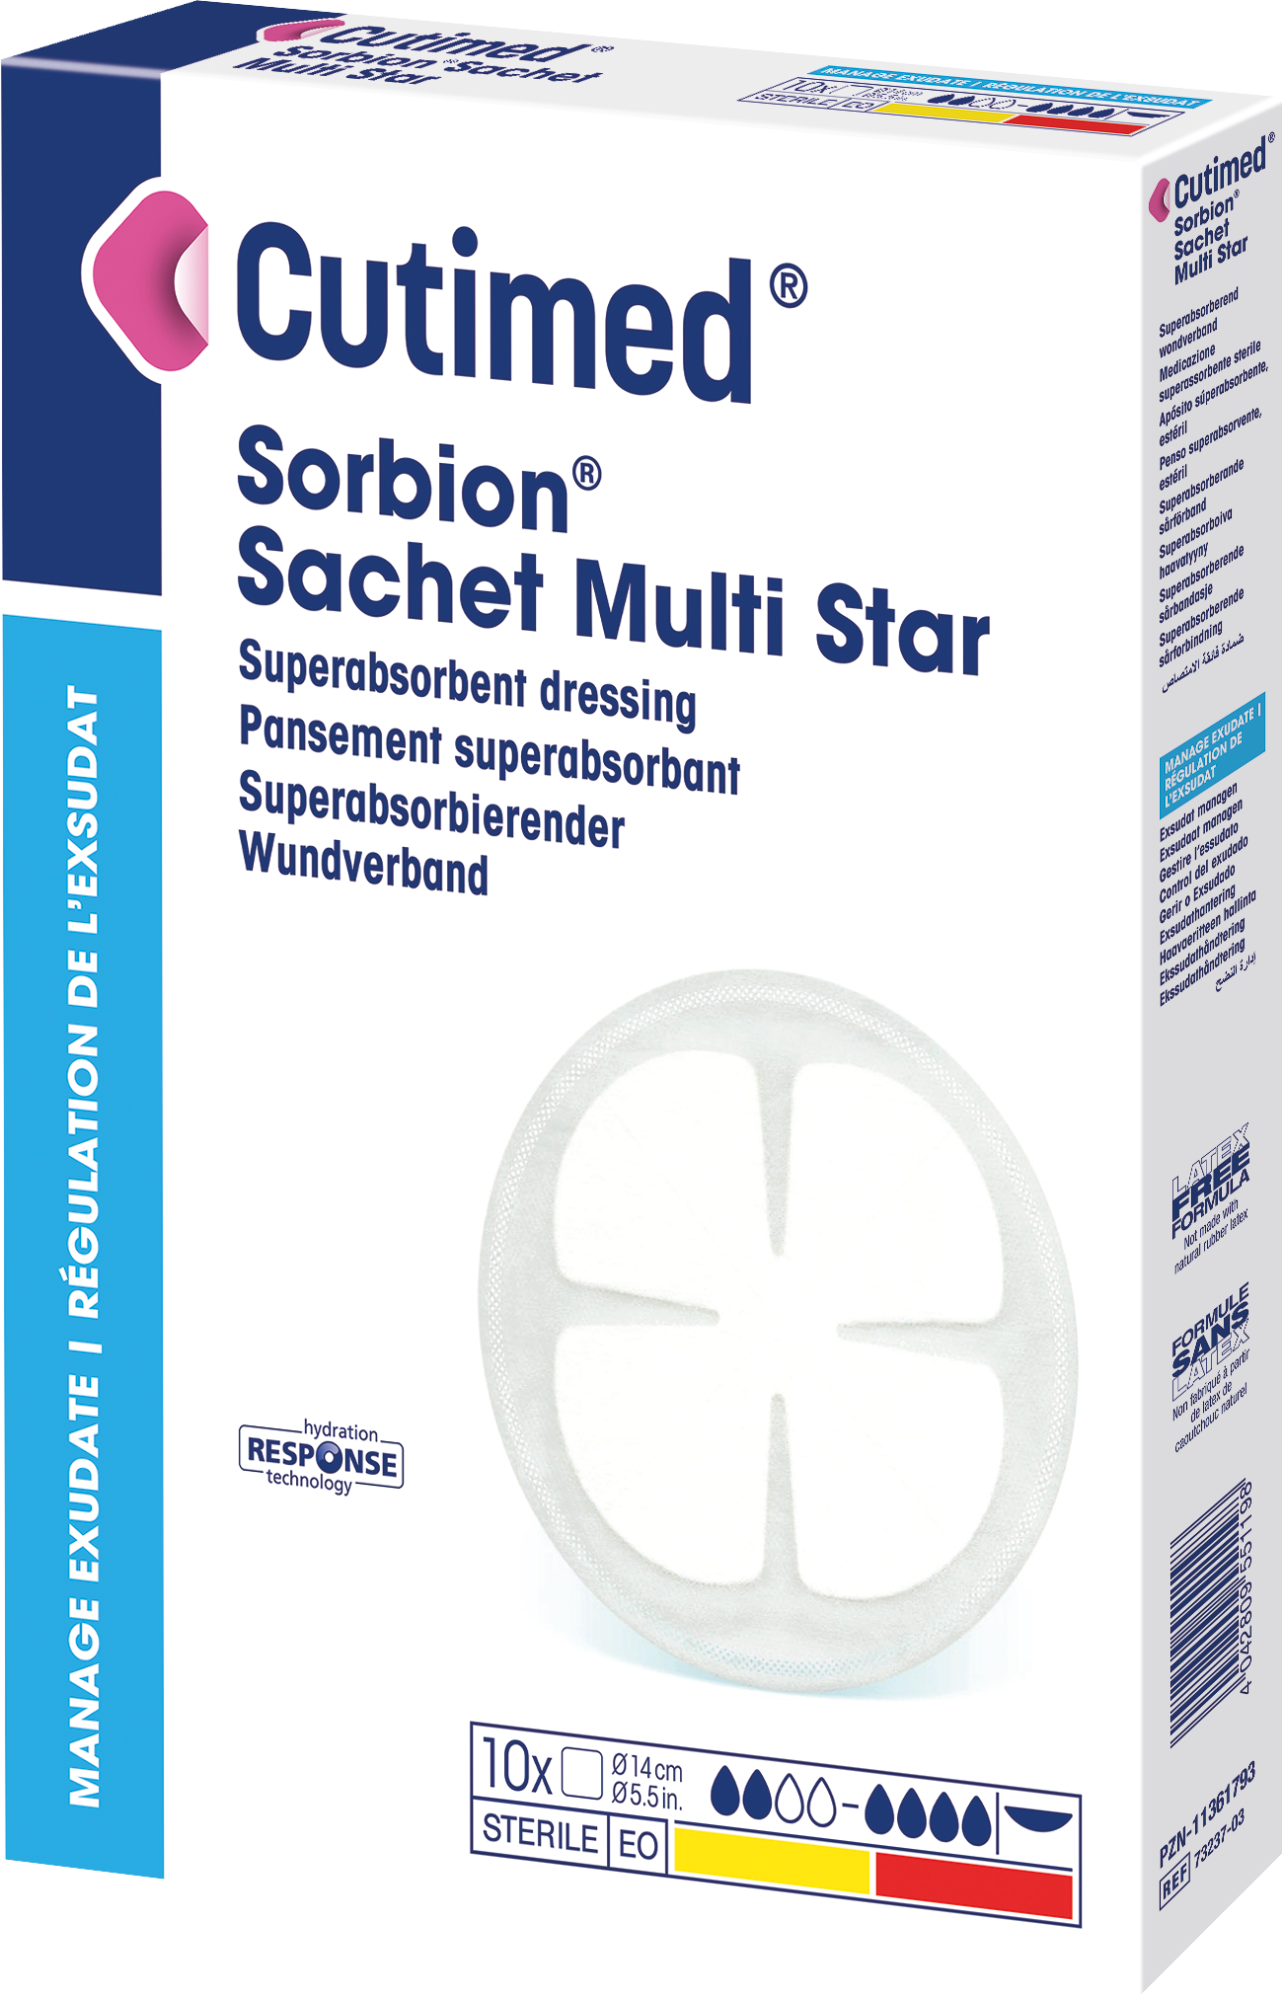 Image showing a packshot of Cutimed® Sorbion® Sachet Multi Star